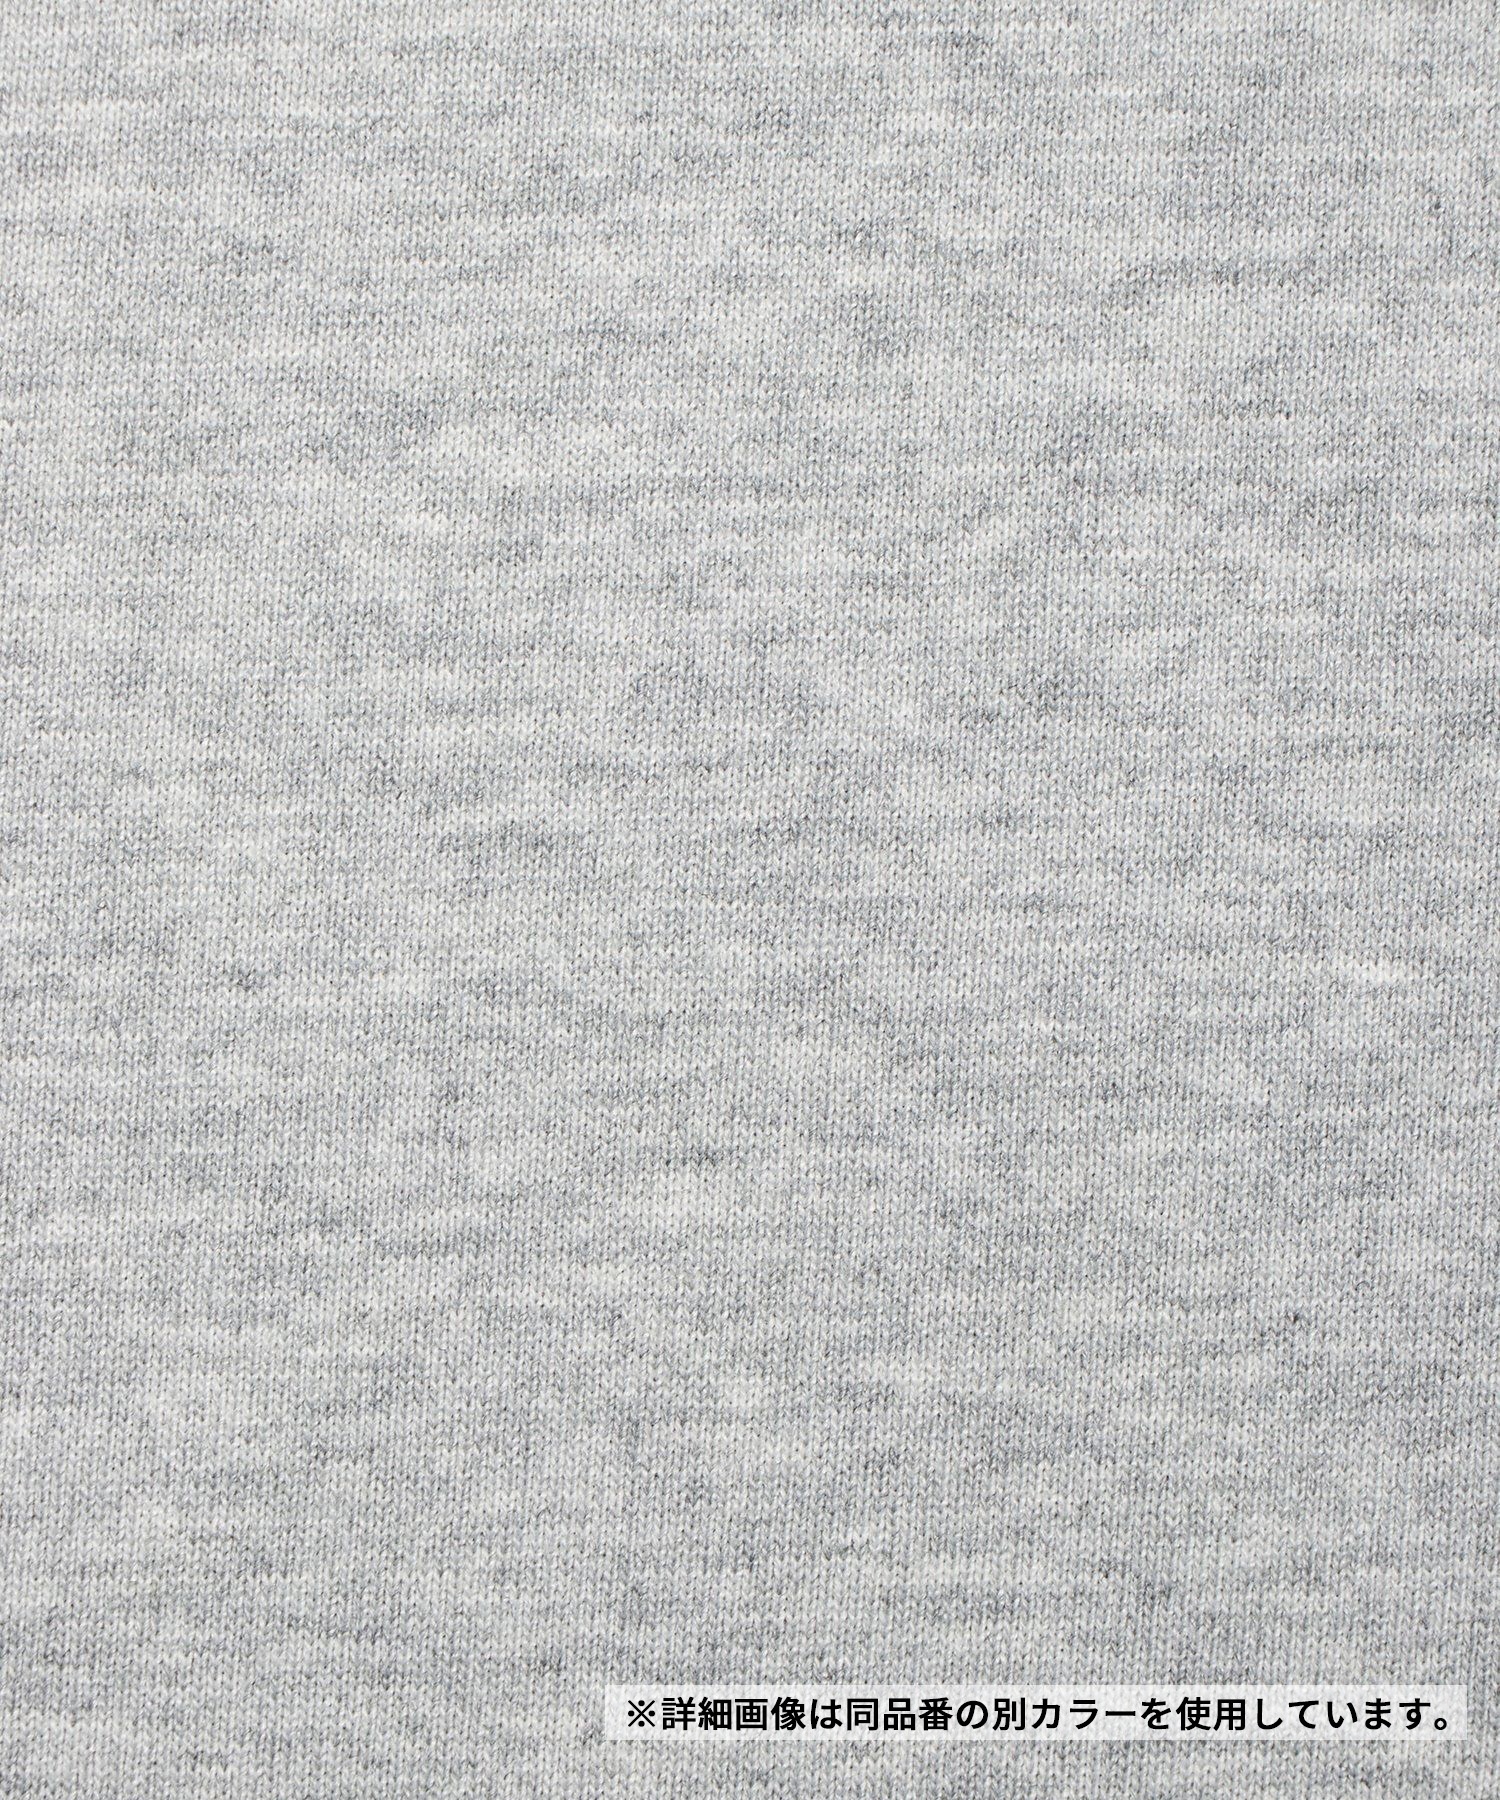 【マトメガイ対象】THE NORTH FACE ザ・ノース・フェイス メンズ Tシャツ 半袖 スクエアロゴ バックプリント 速乾 NT32447 W(W-S)